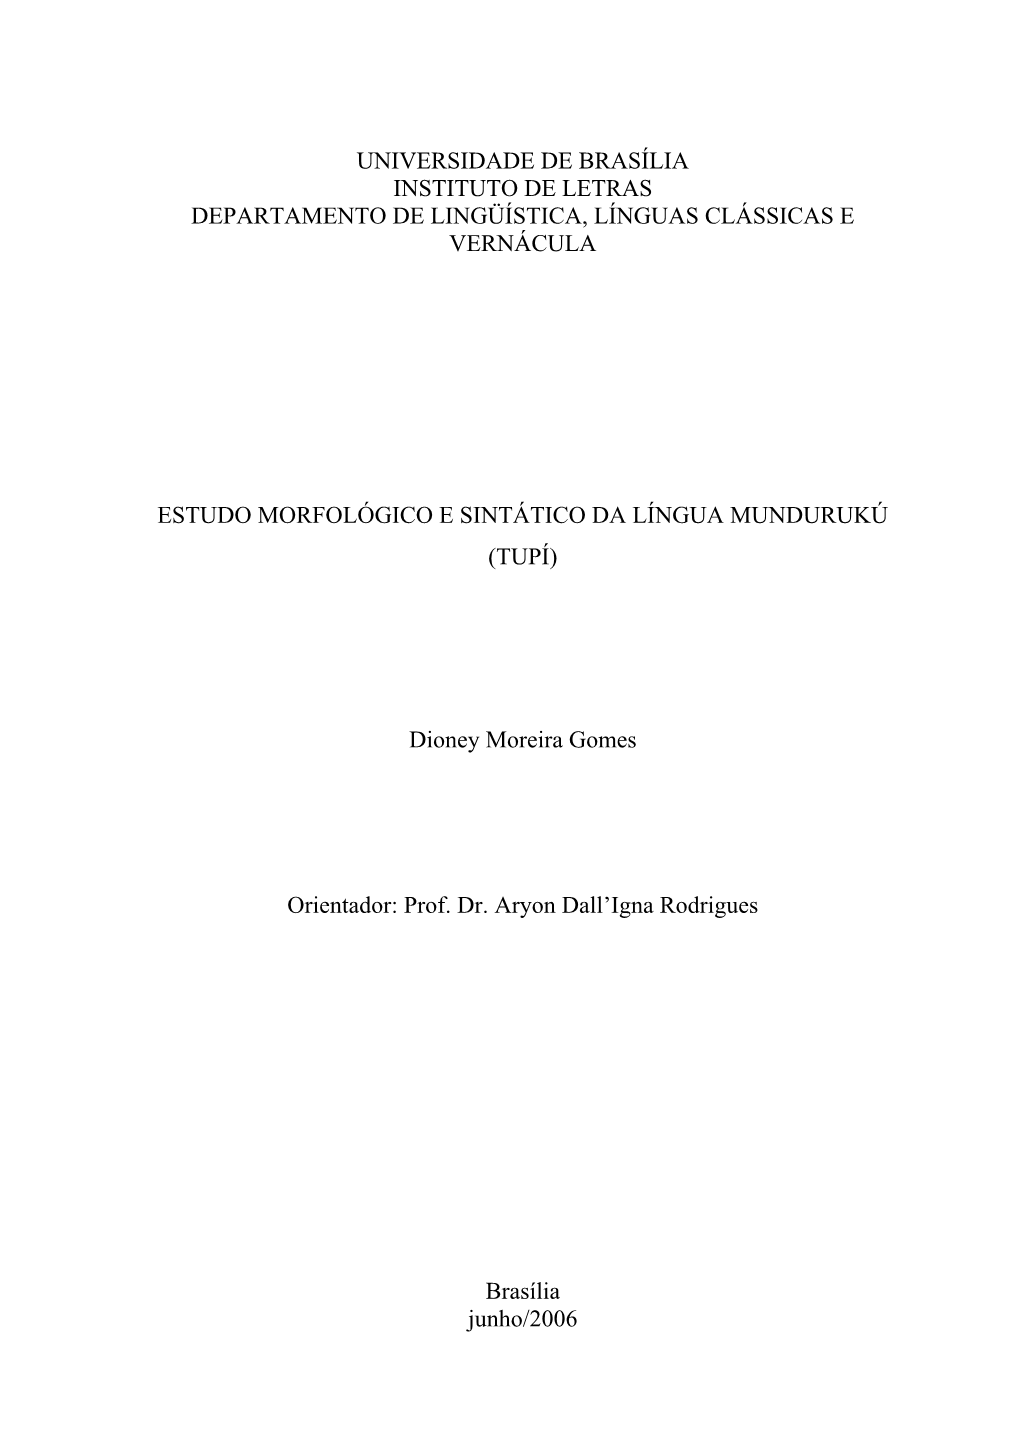 Estudo Morfológico E Sintático Da Língua Mundurukú (Tupi)